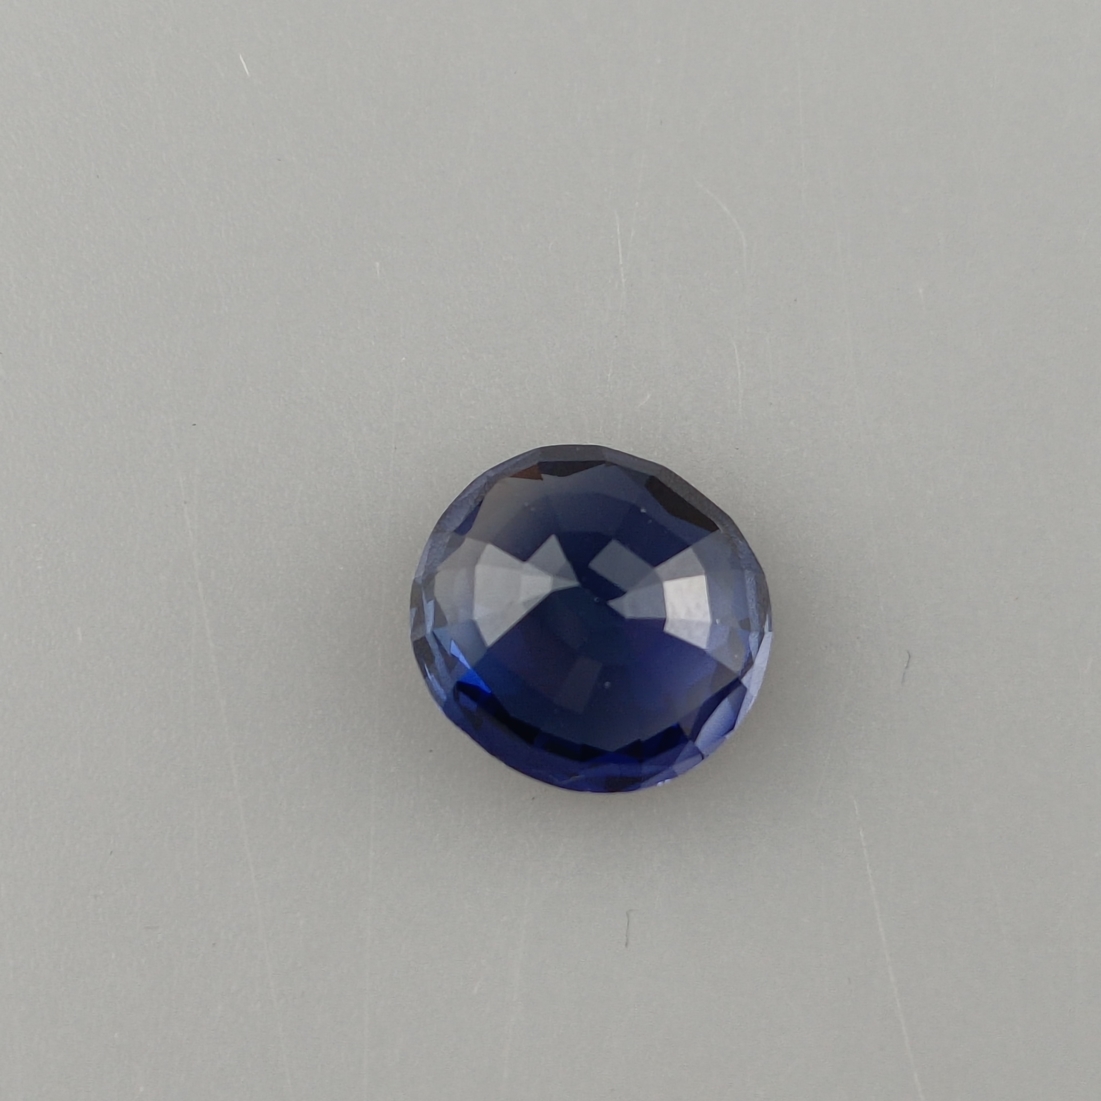 Loser Saphir von 9,48 ct.- synthetisch, intensives Blau, Rundschliff, Gewicht 9,48 ct, Dm.ca. 13 mm - Image 4 of 5